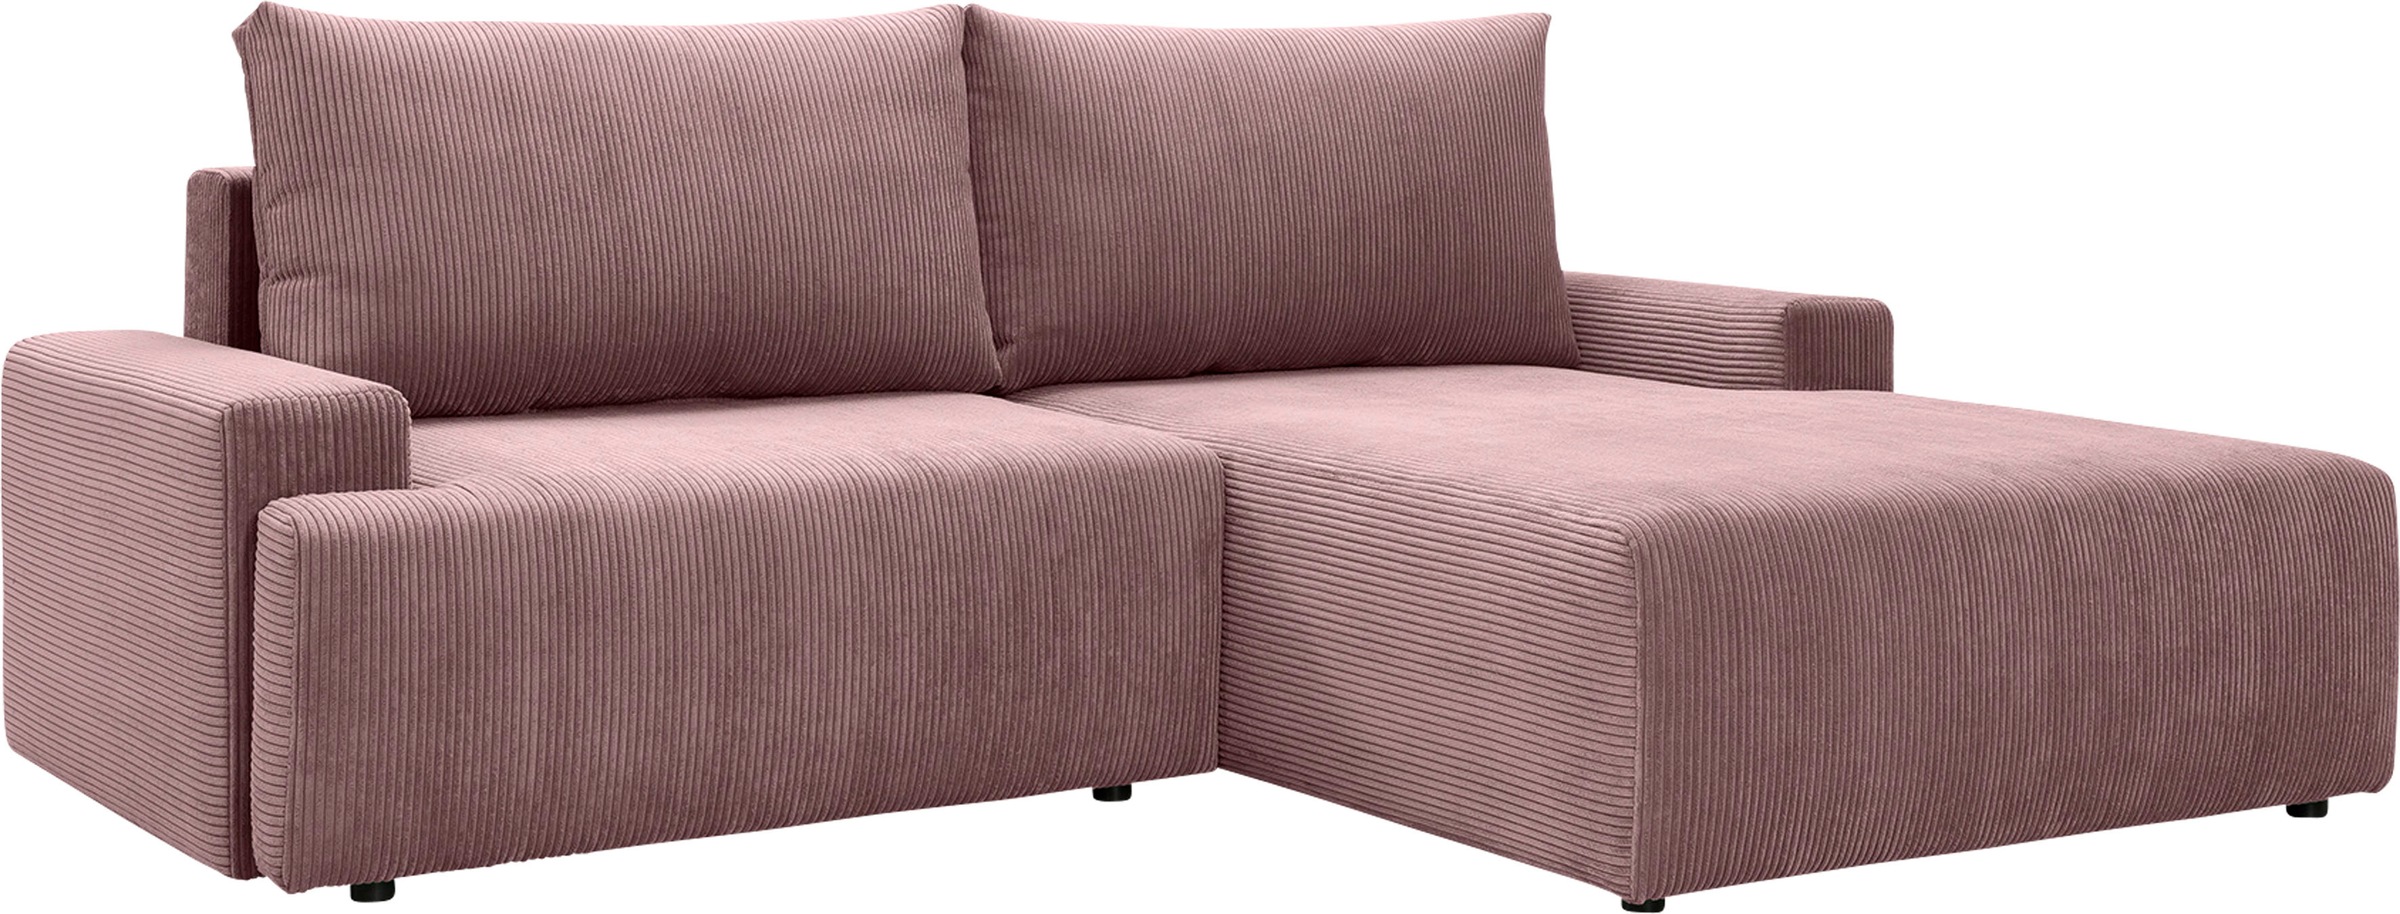 exxpo - sofa fashion Ecksofa jetzt verschiedenen »Orinoko«, Cord-Farben in und Bettkasten kaufen Bettfunktion inklusive